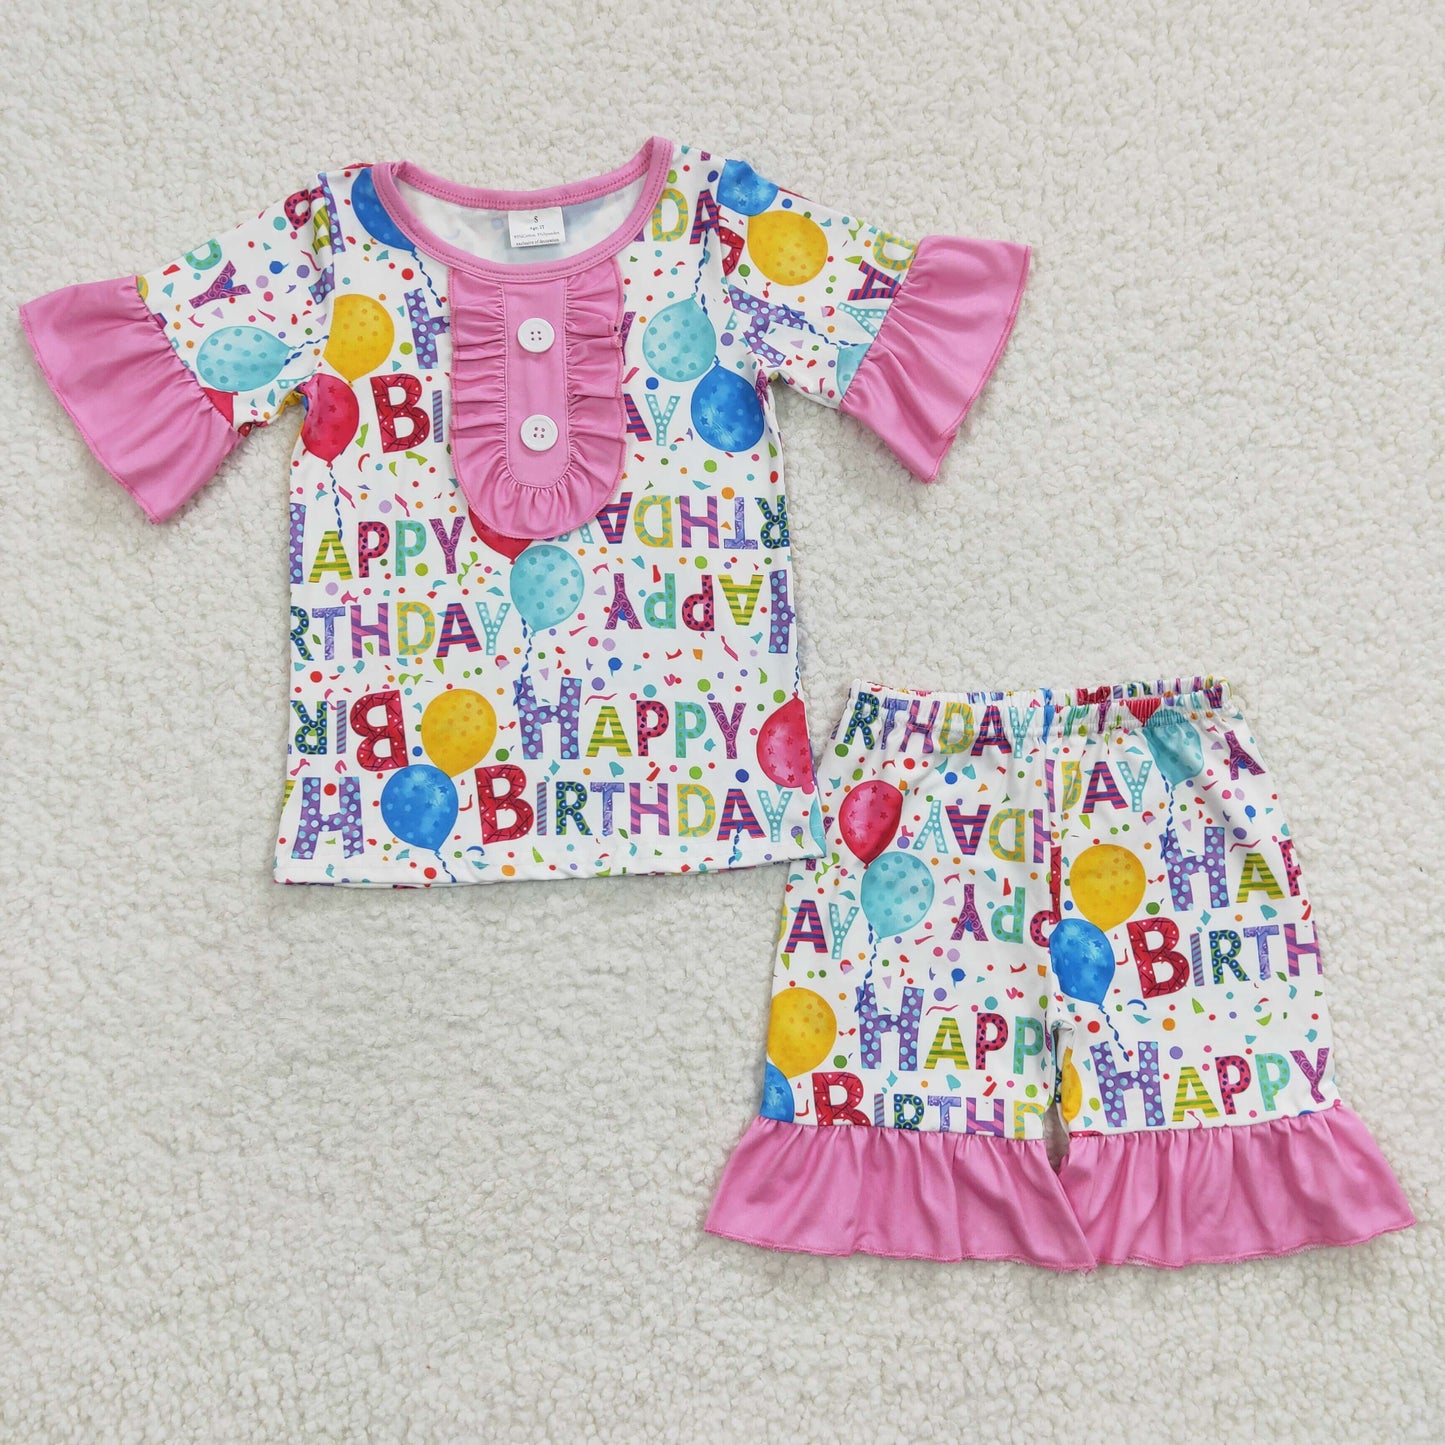 happy birthday shorts pajama set for boy